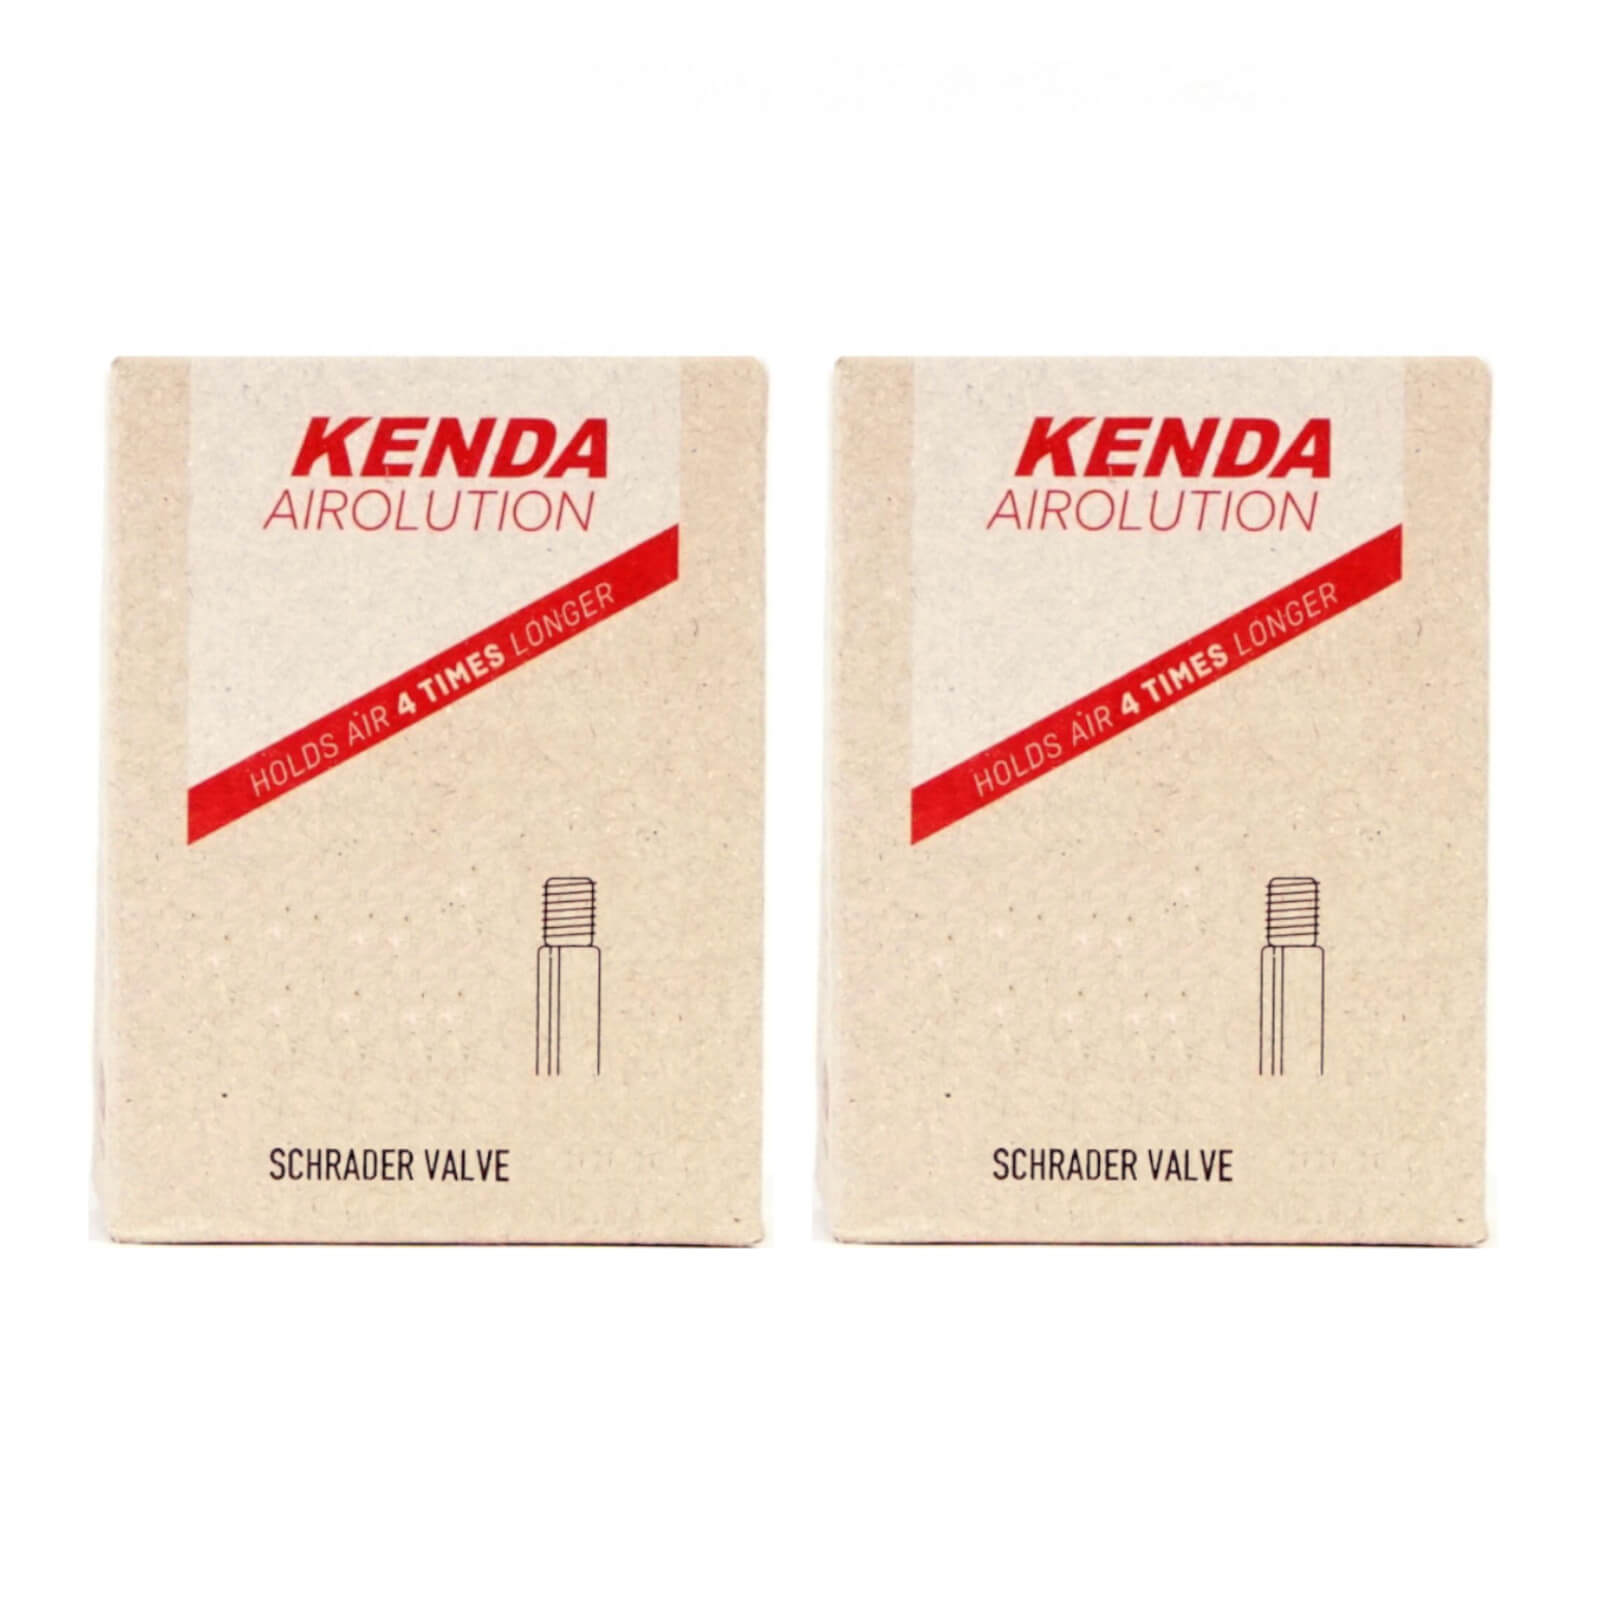 Kenda Airolution 26x2.0-2.4" 26 Inch Schrader Valve Bike Inner Tube Pack of 2